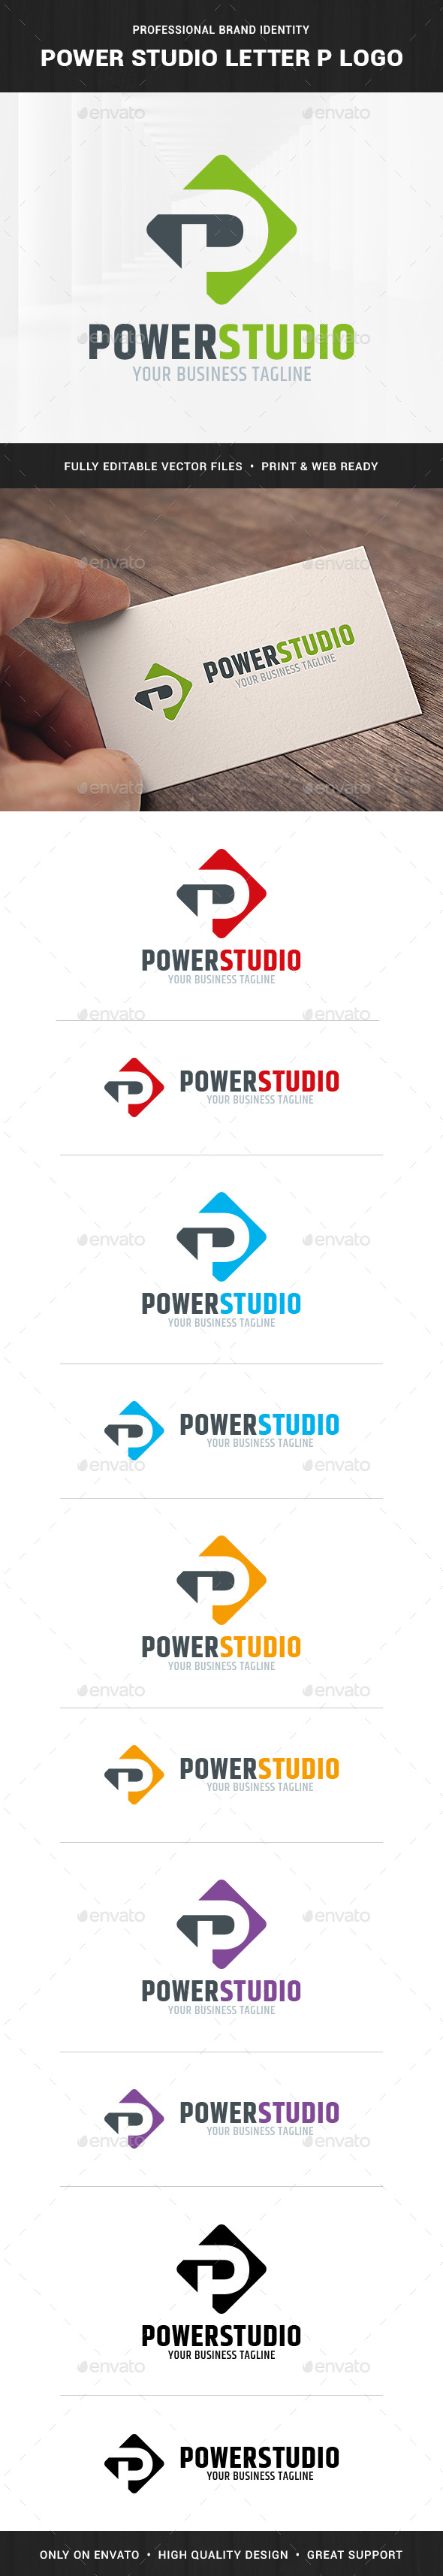 Power Studio - Letter P Logo Template